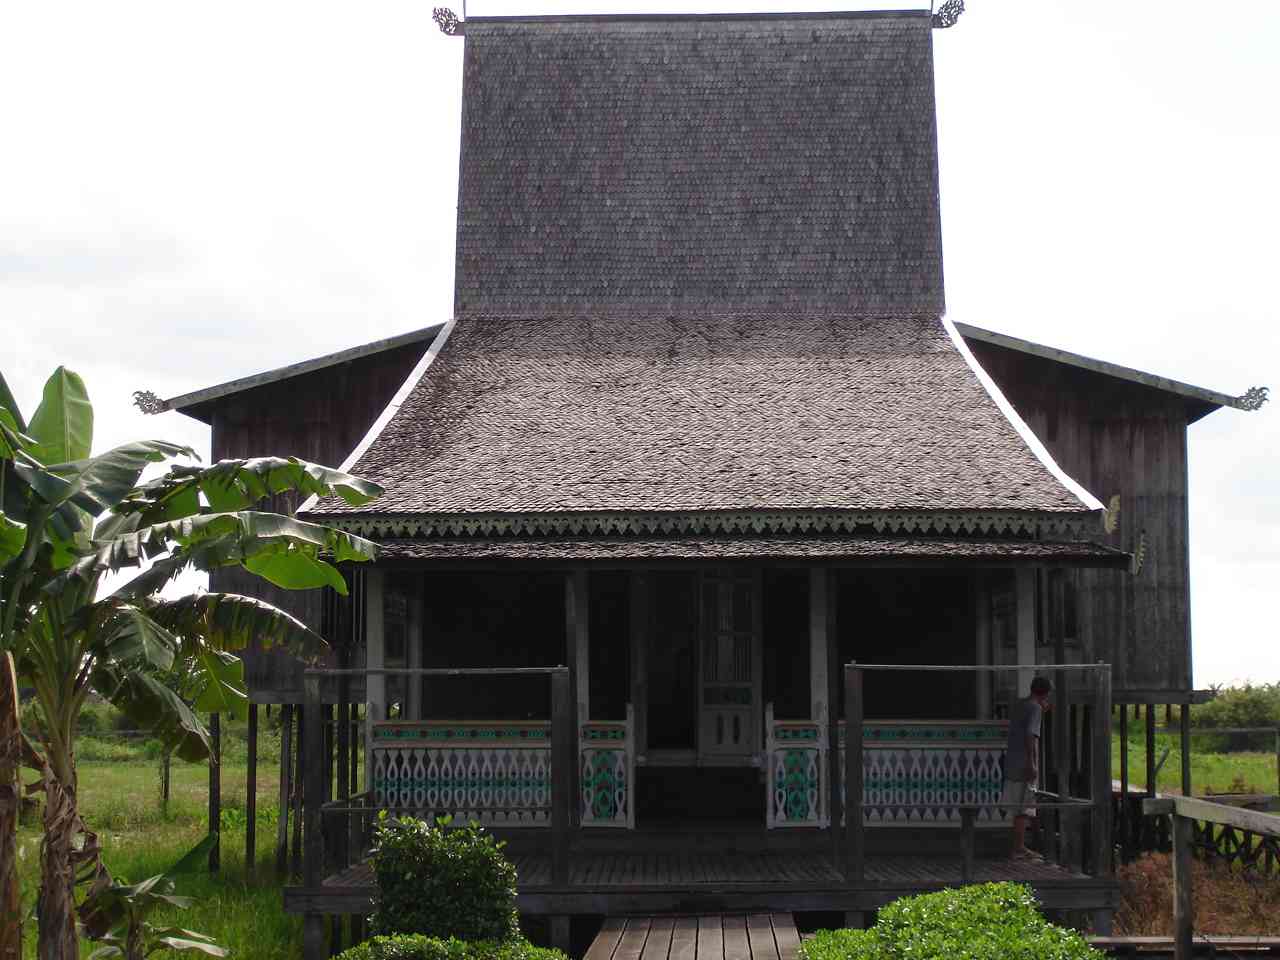 Rumah Adat Tradisional Indonesia - Jember Tourism